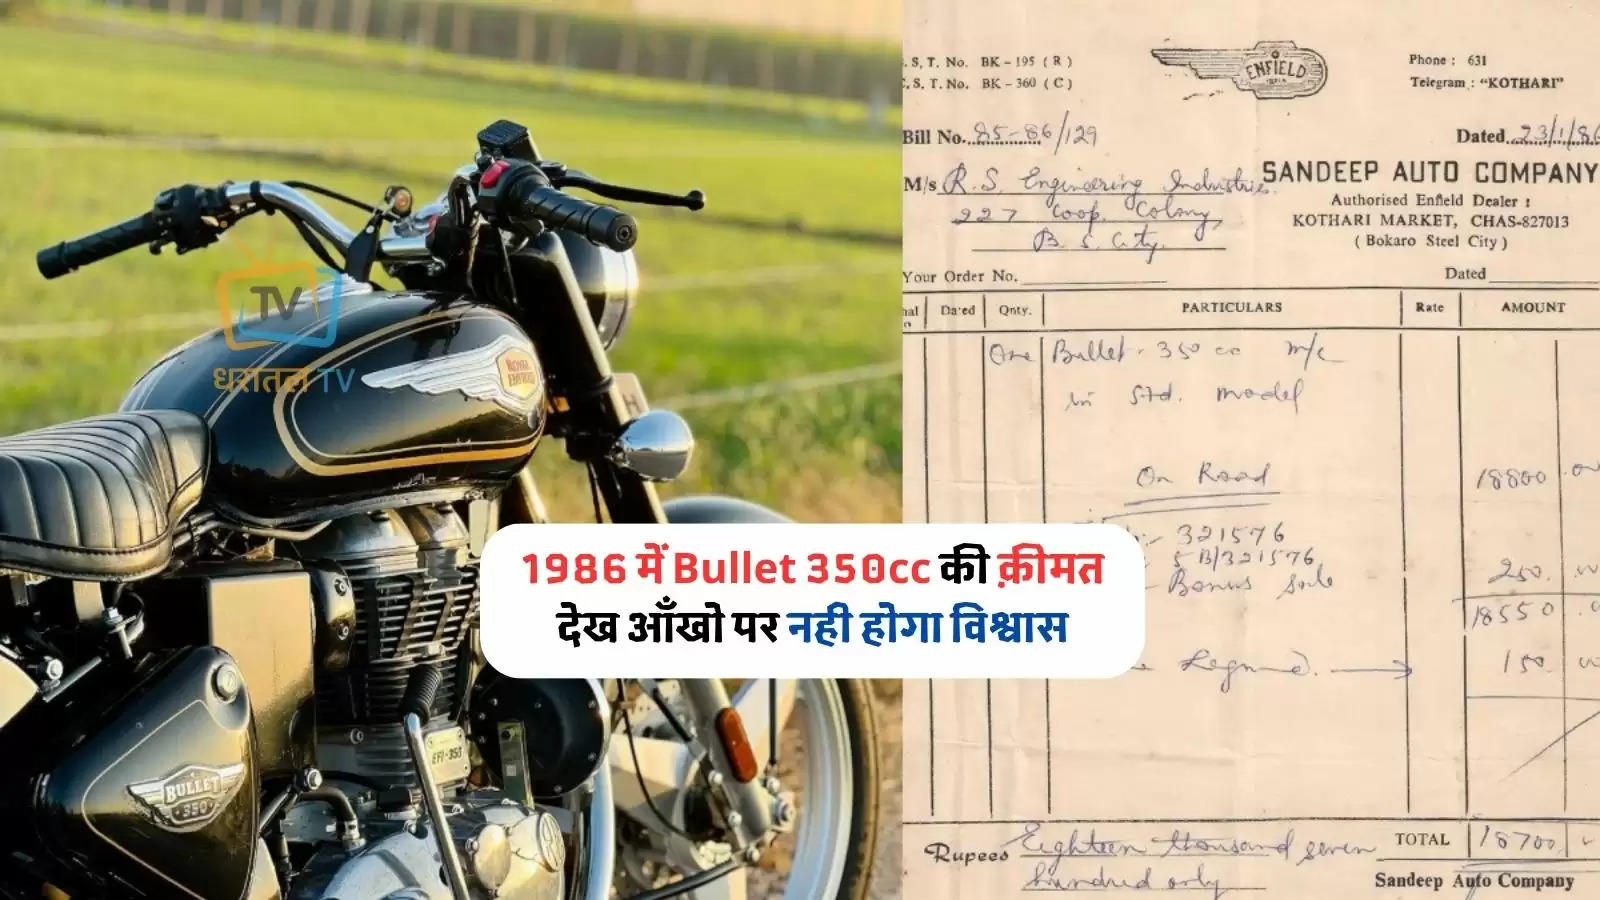 Bullet 350cc bike price in 1986